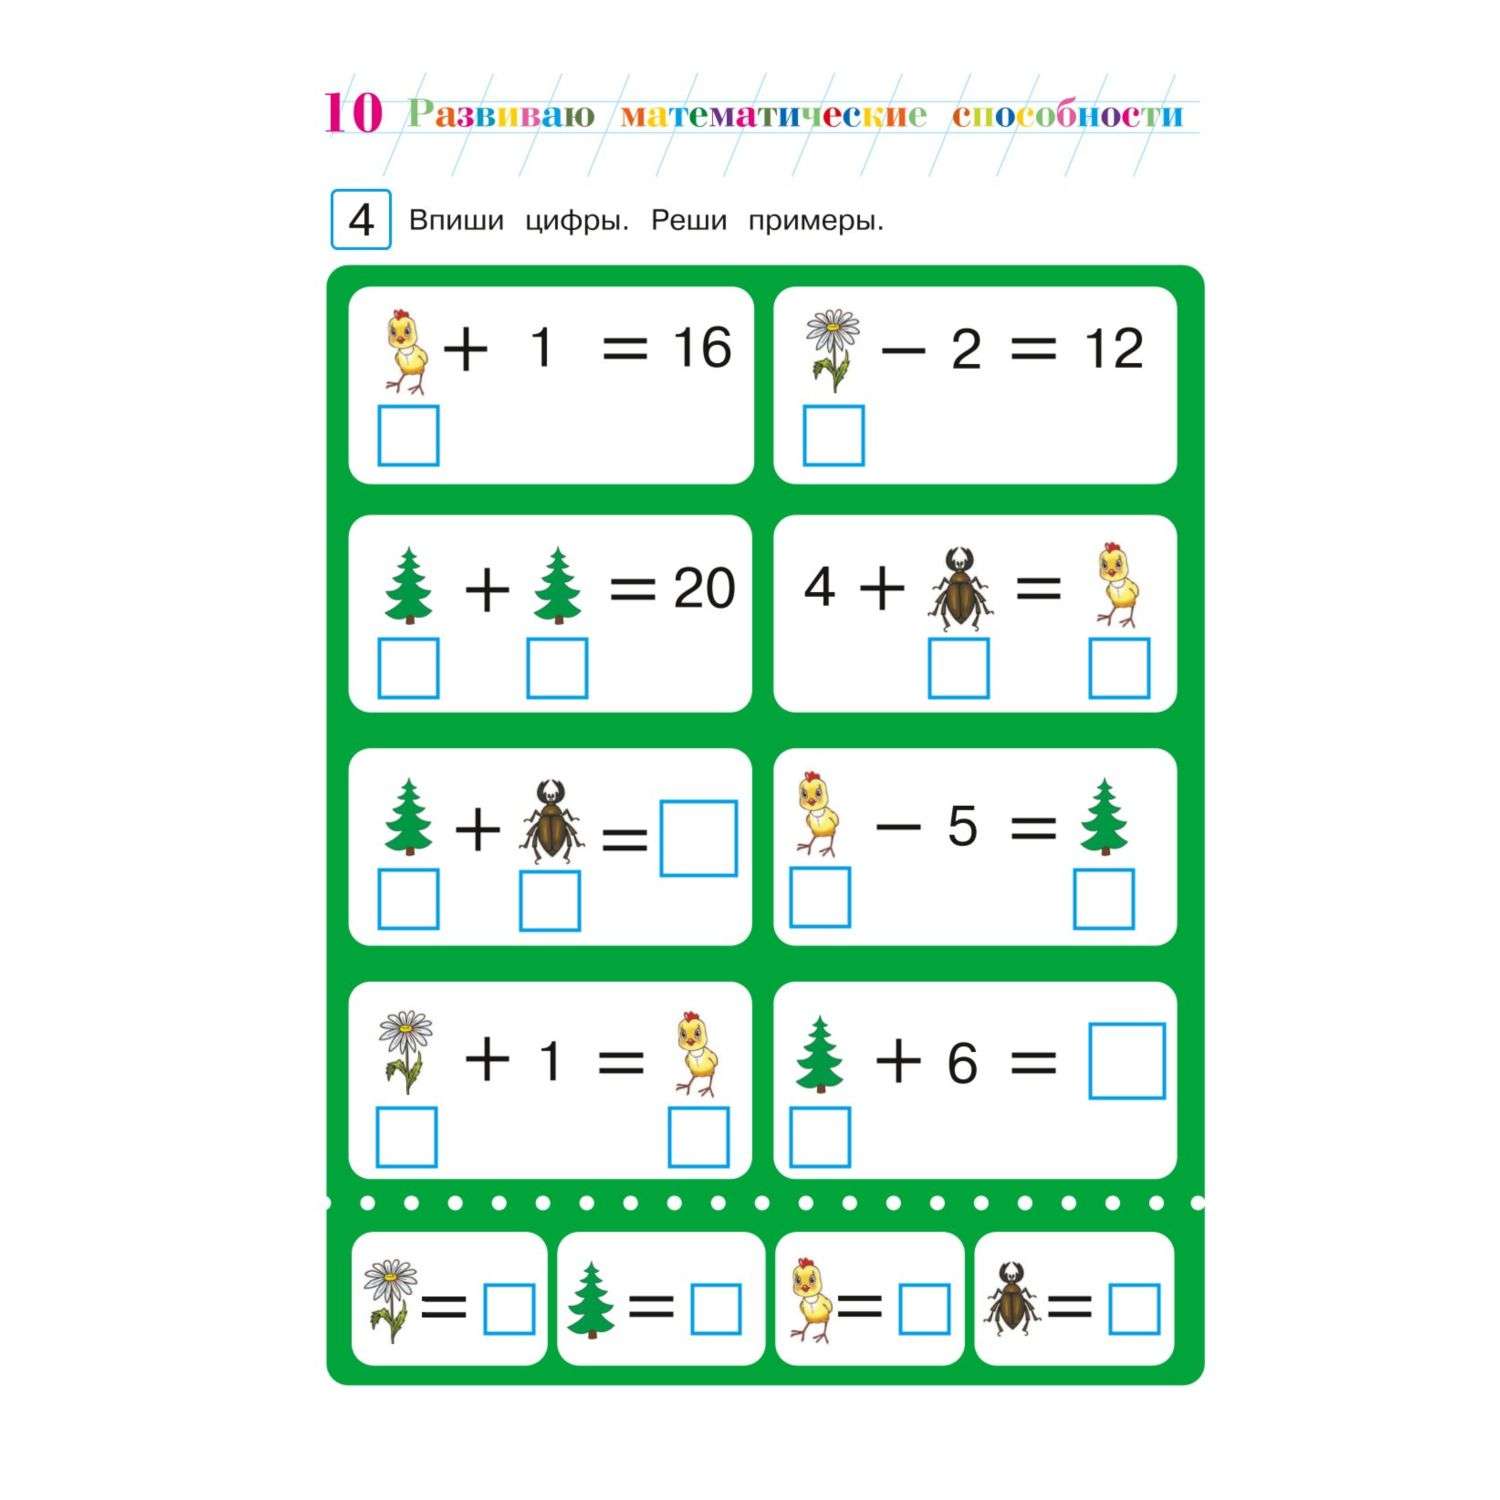 Книга Эксмо Развиваю математическое мышление для детей 6 7 лет - фото 9